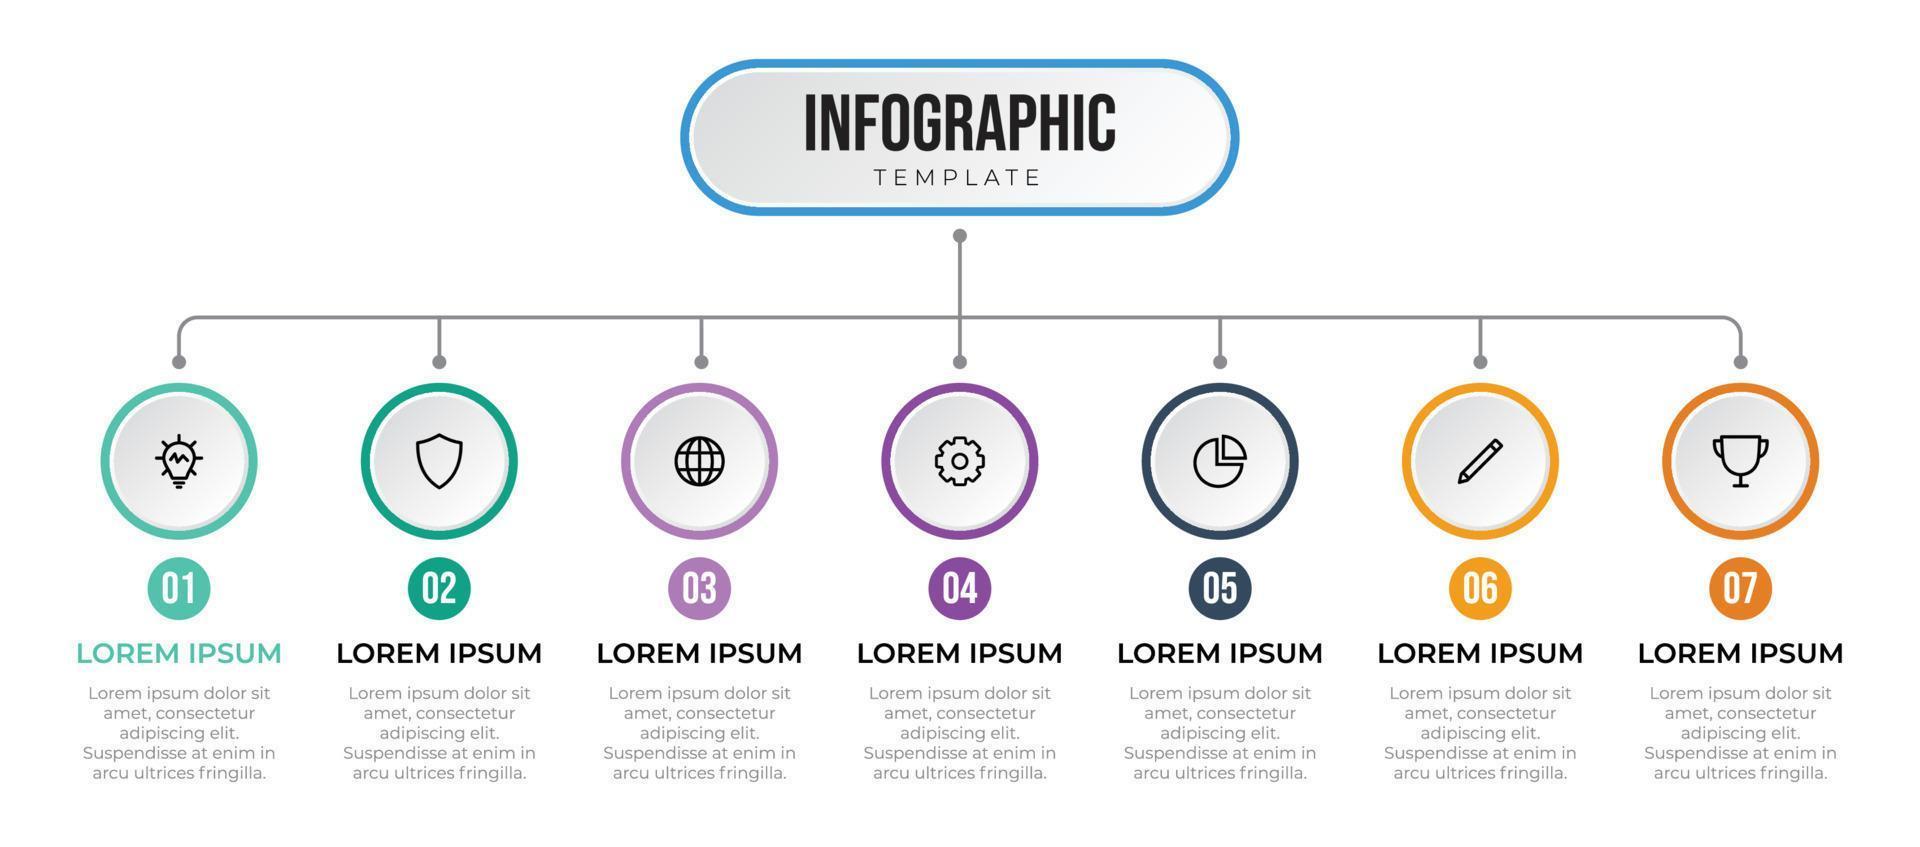 modelo de infográfico de negócios com 7 opções, lista, etapas, processos. pode ser usado para fluxo de trabalho, estrutura de tópicos, gráfico, diagrama, informações, apresentação, slide, brochura, cartaz, etc. vetor